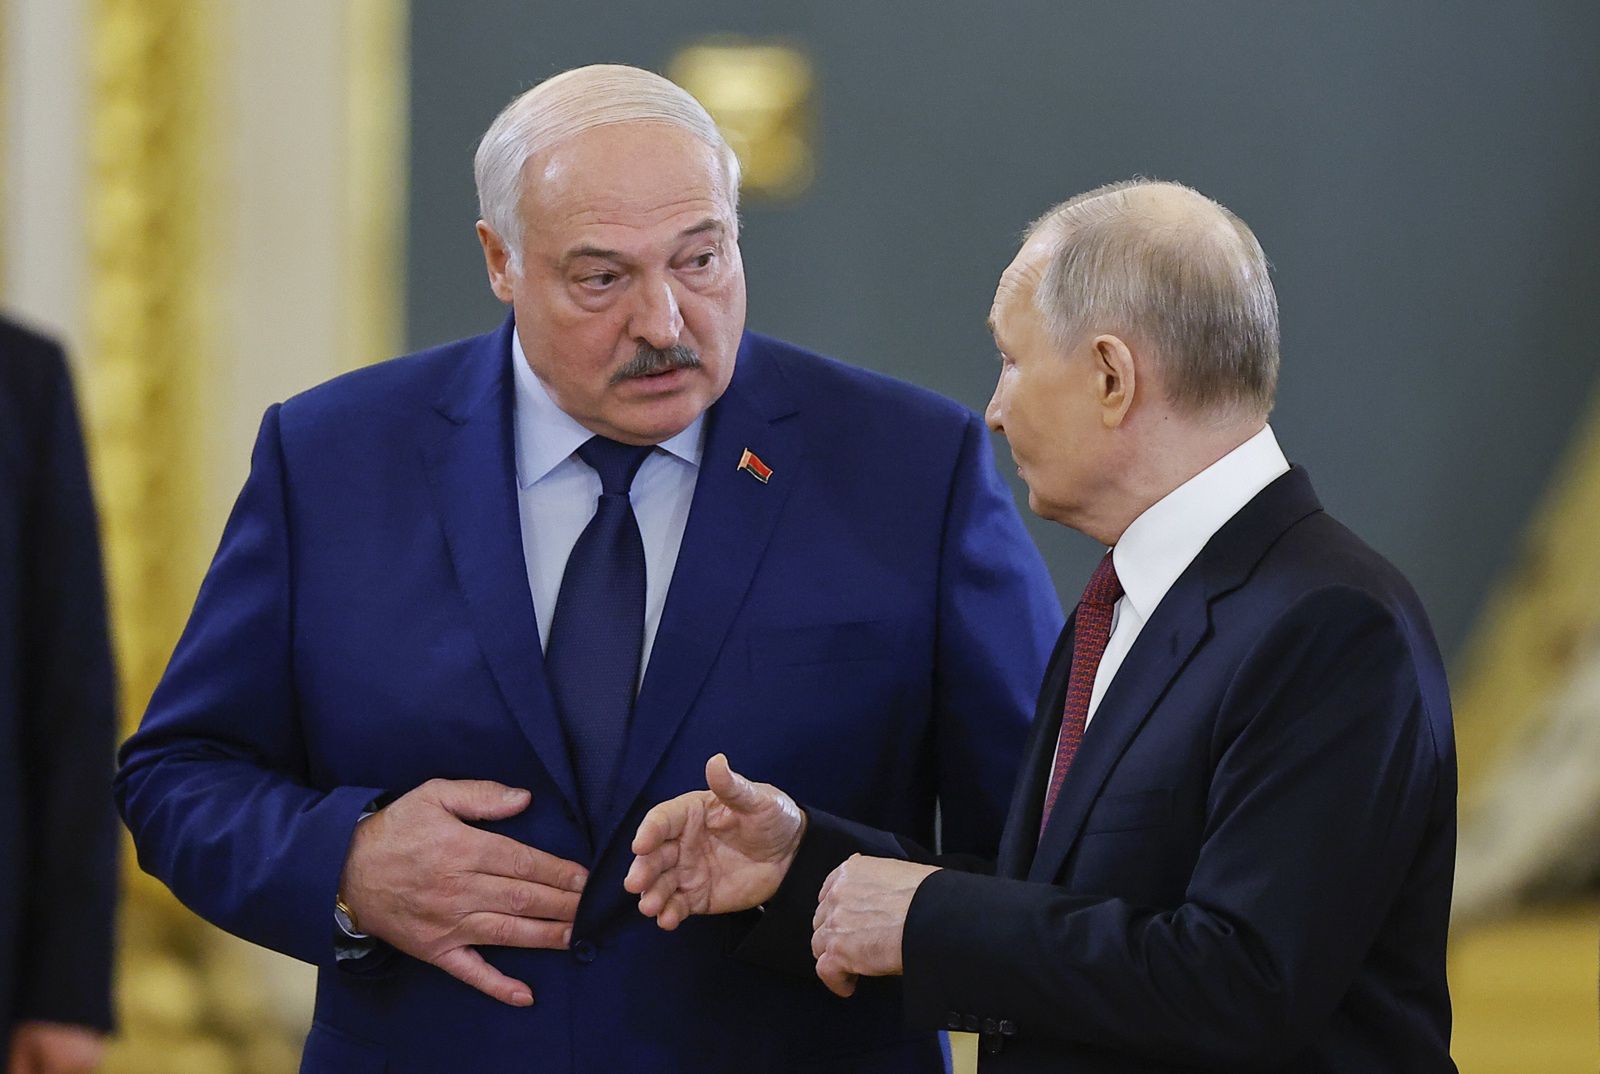 Białoruś włączy się do wojny? "Łukaszenka zrobi wszystko, aby utrzymać władzę"